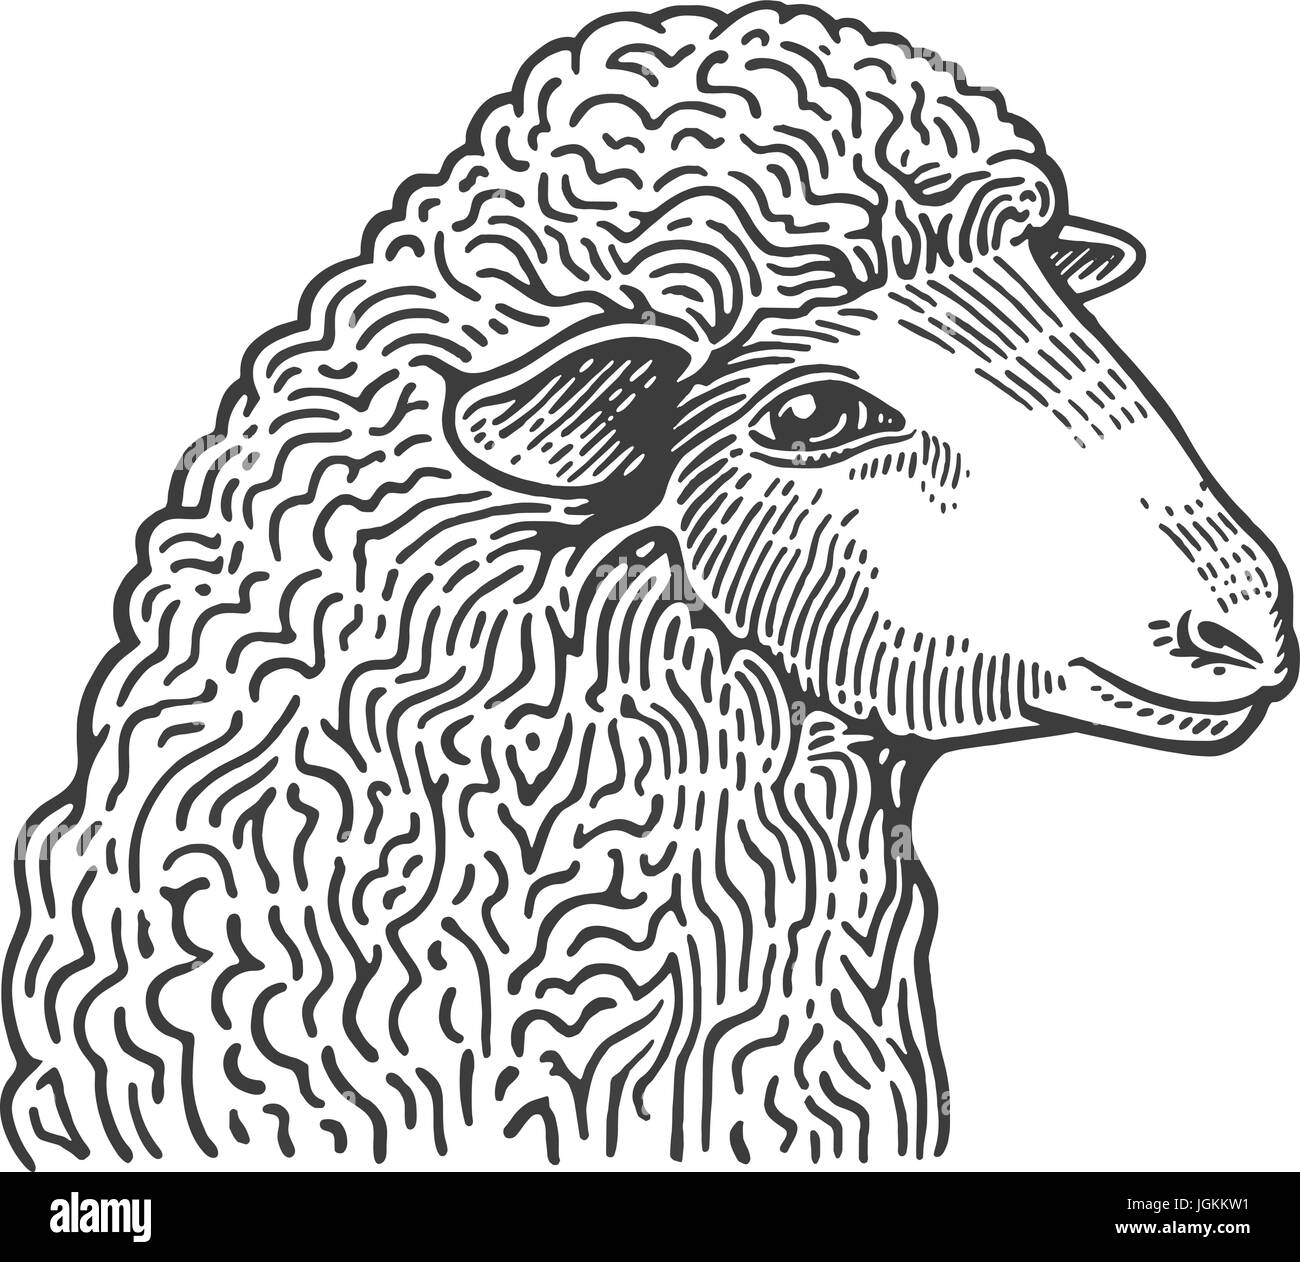 Têtes de moutons dessinés à la main, dans le style de la gravure médiévale. Des animaux d'élevage domestique isolé sur fond blanc. Vector illustration en couleurs monochromes pour menu de restaurant, boucherie, site web, logo. Illustration de Vecteur